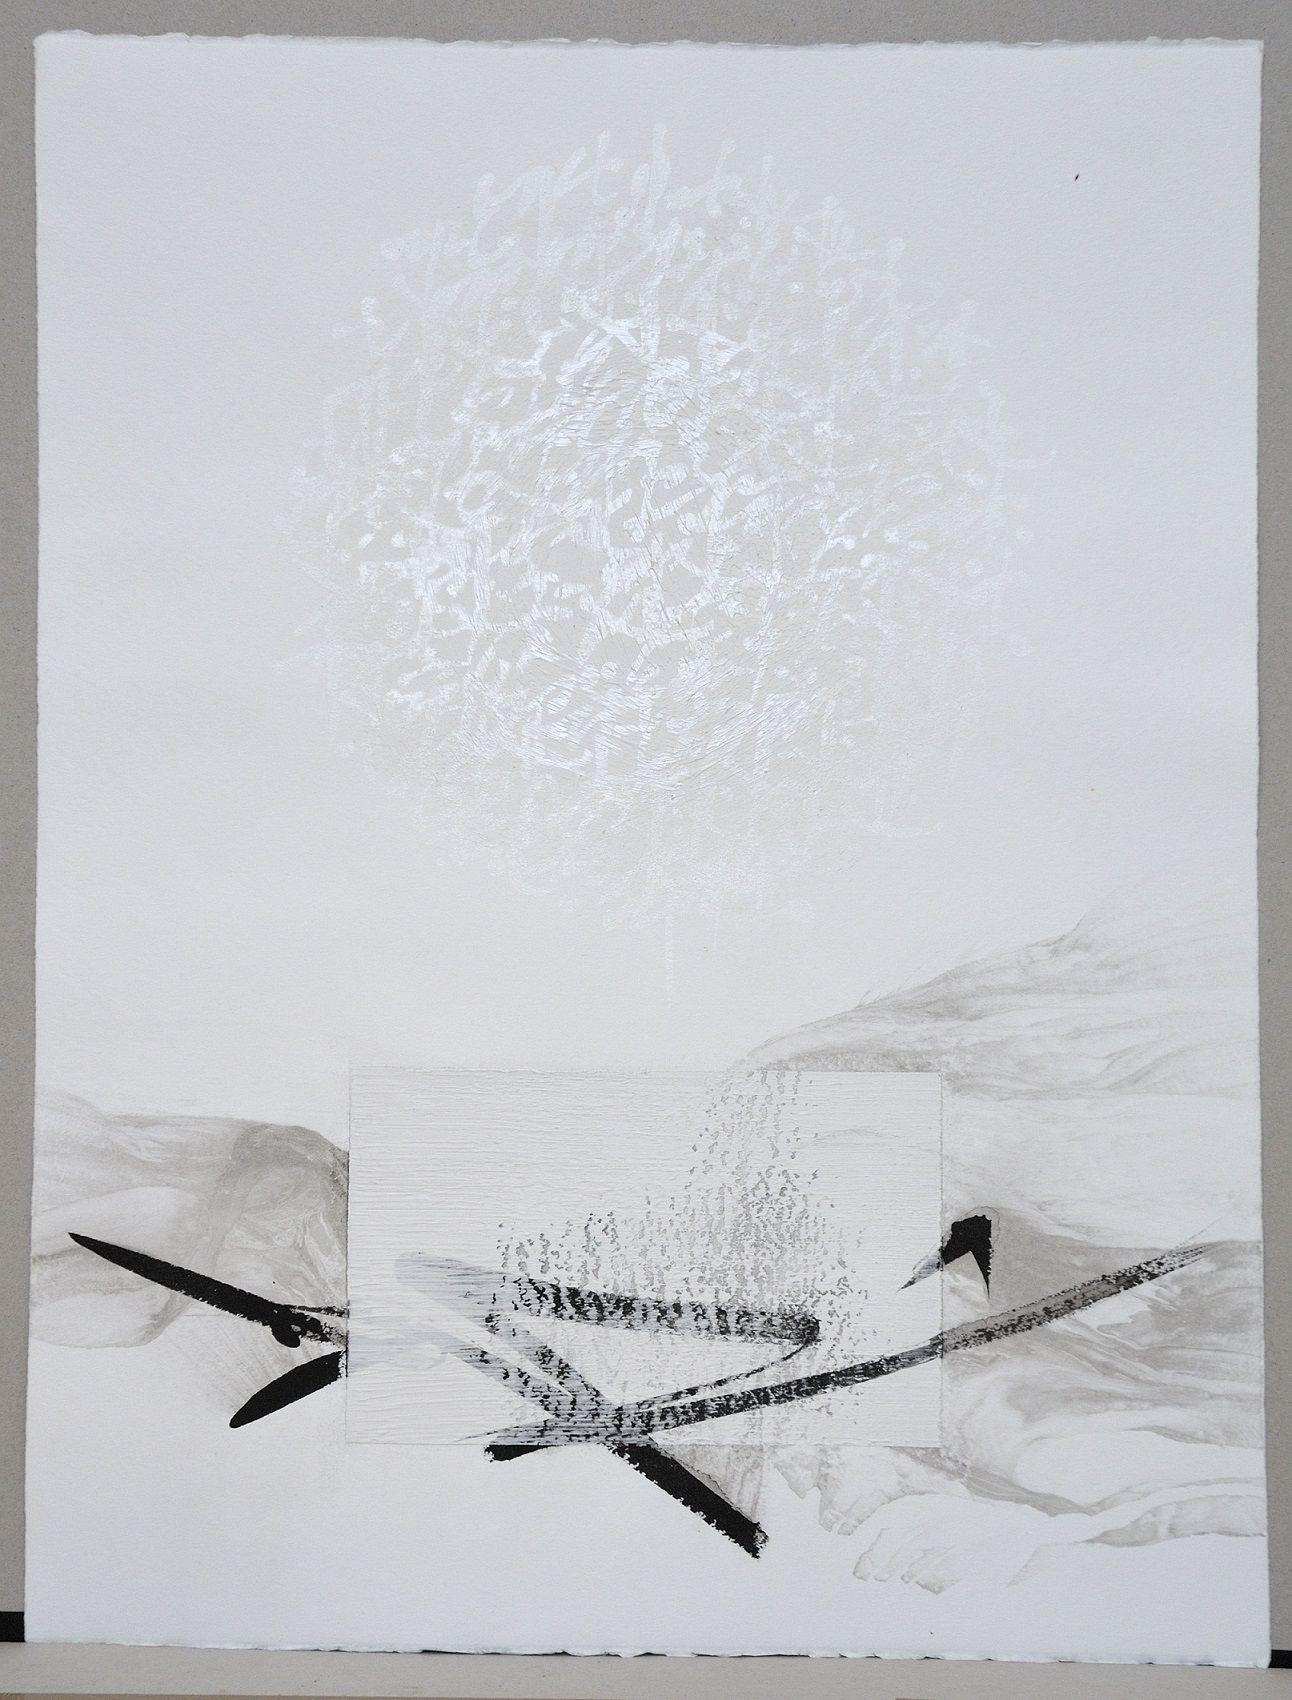 Permanescence N528 est une peinture unique à l'encre et à l'acrylique sur papier de l'artiste contemporain japonais Hachiro Kanno, dont les dimensions sont de 65 × 50 cm (25,6 × 19,7 in). 
L'œuvre est signée, vendue non encadrée et accompagnée d'un